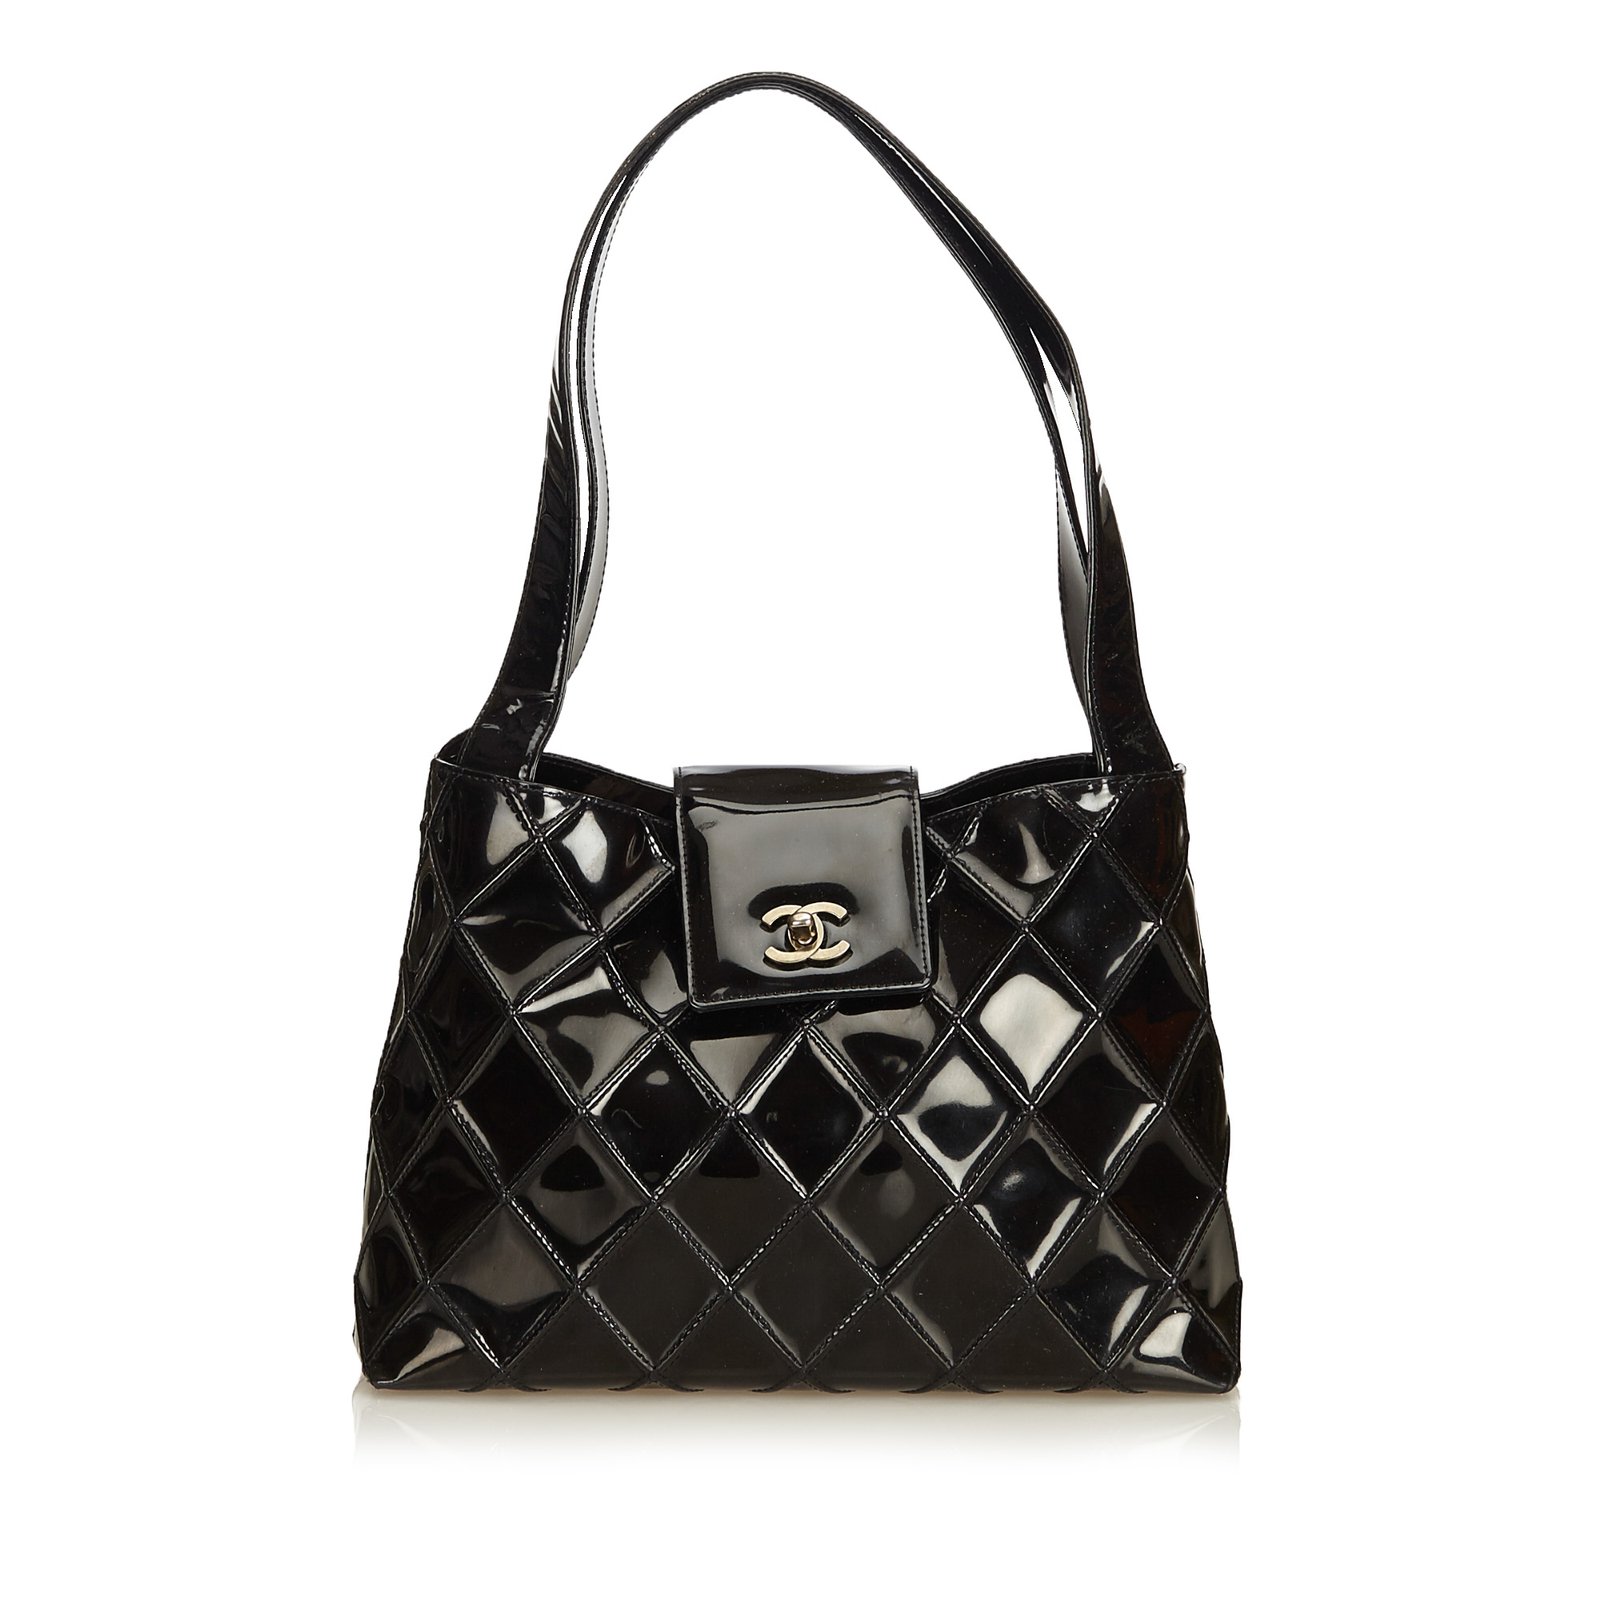 Chanel Vintage Chanel Black Patent Leather Shoulder Bucket Bag